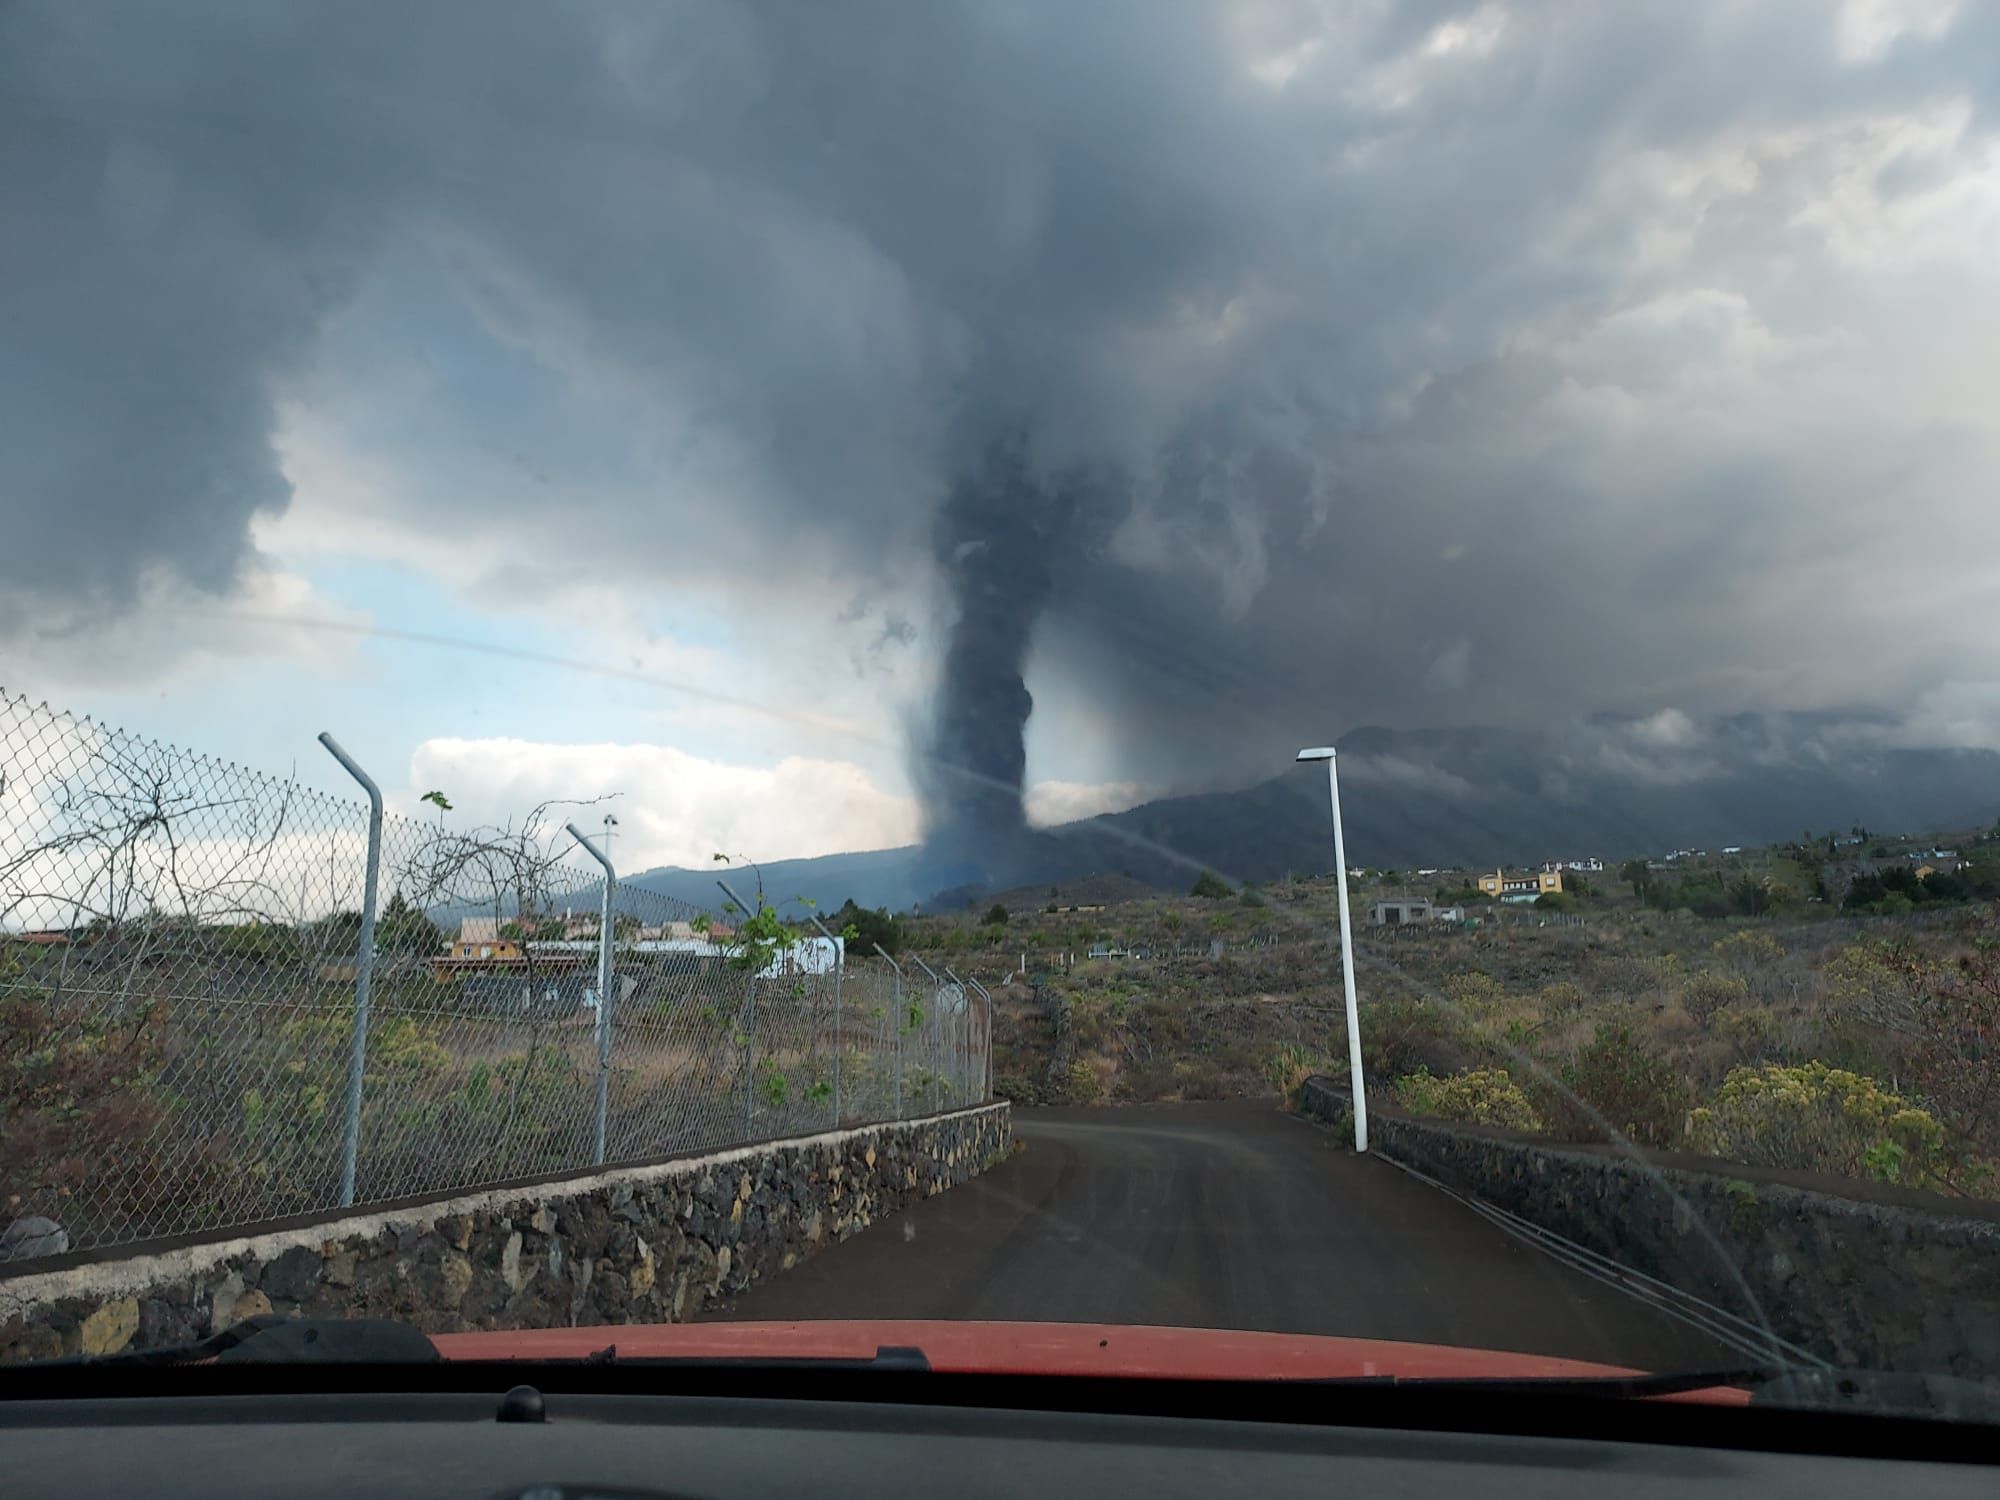 Erupción volcánica: Ayuda de los bomberos de Lanzarote en La Palma